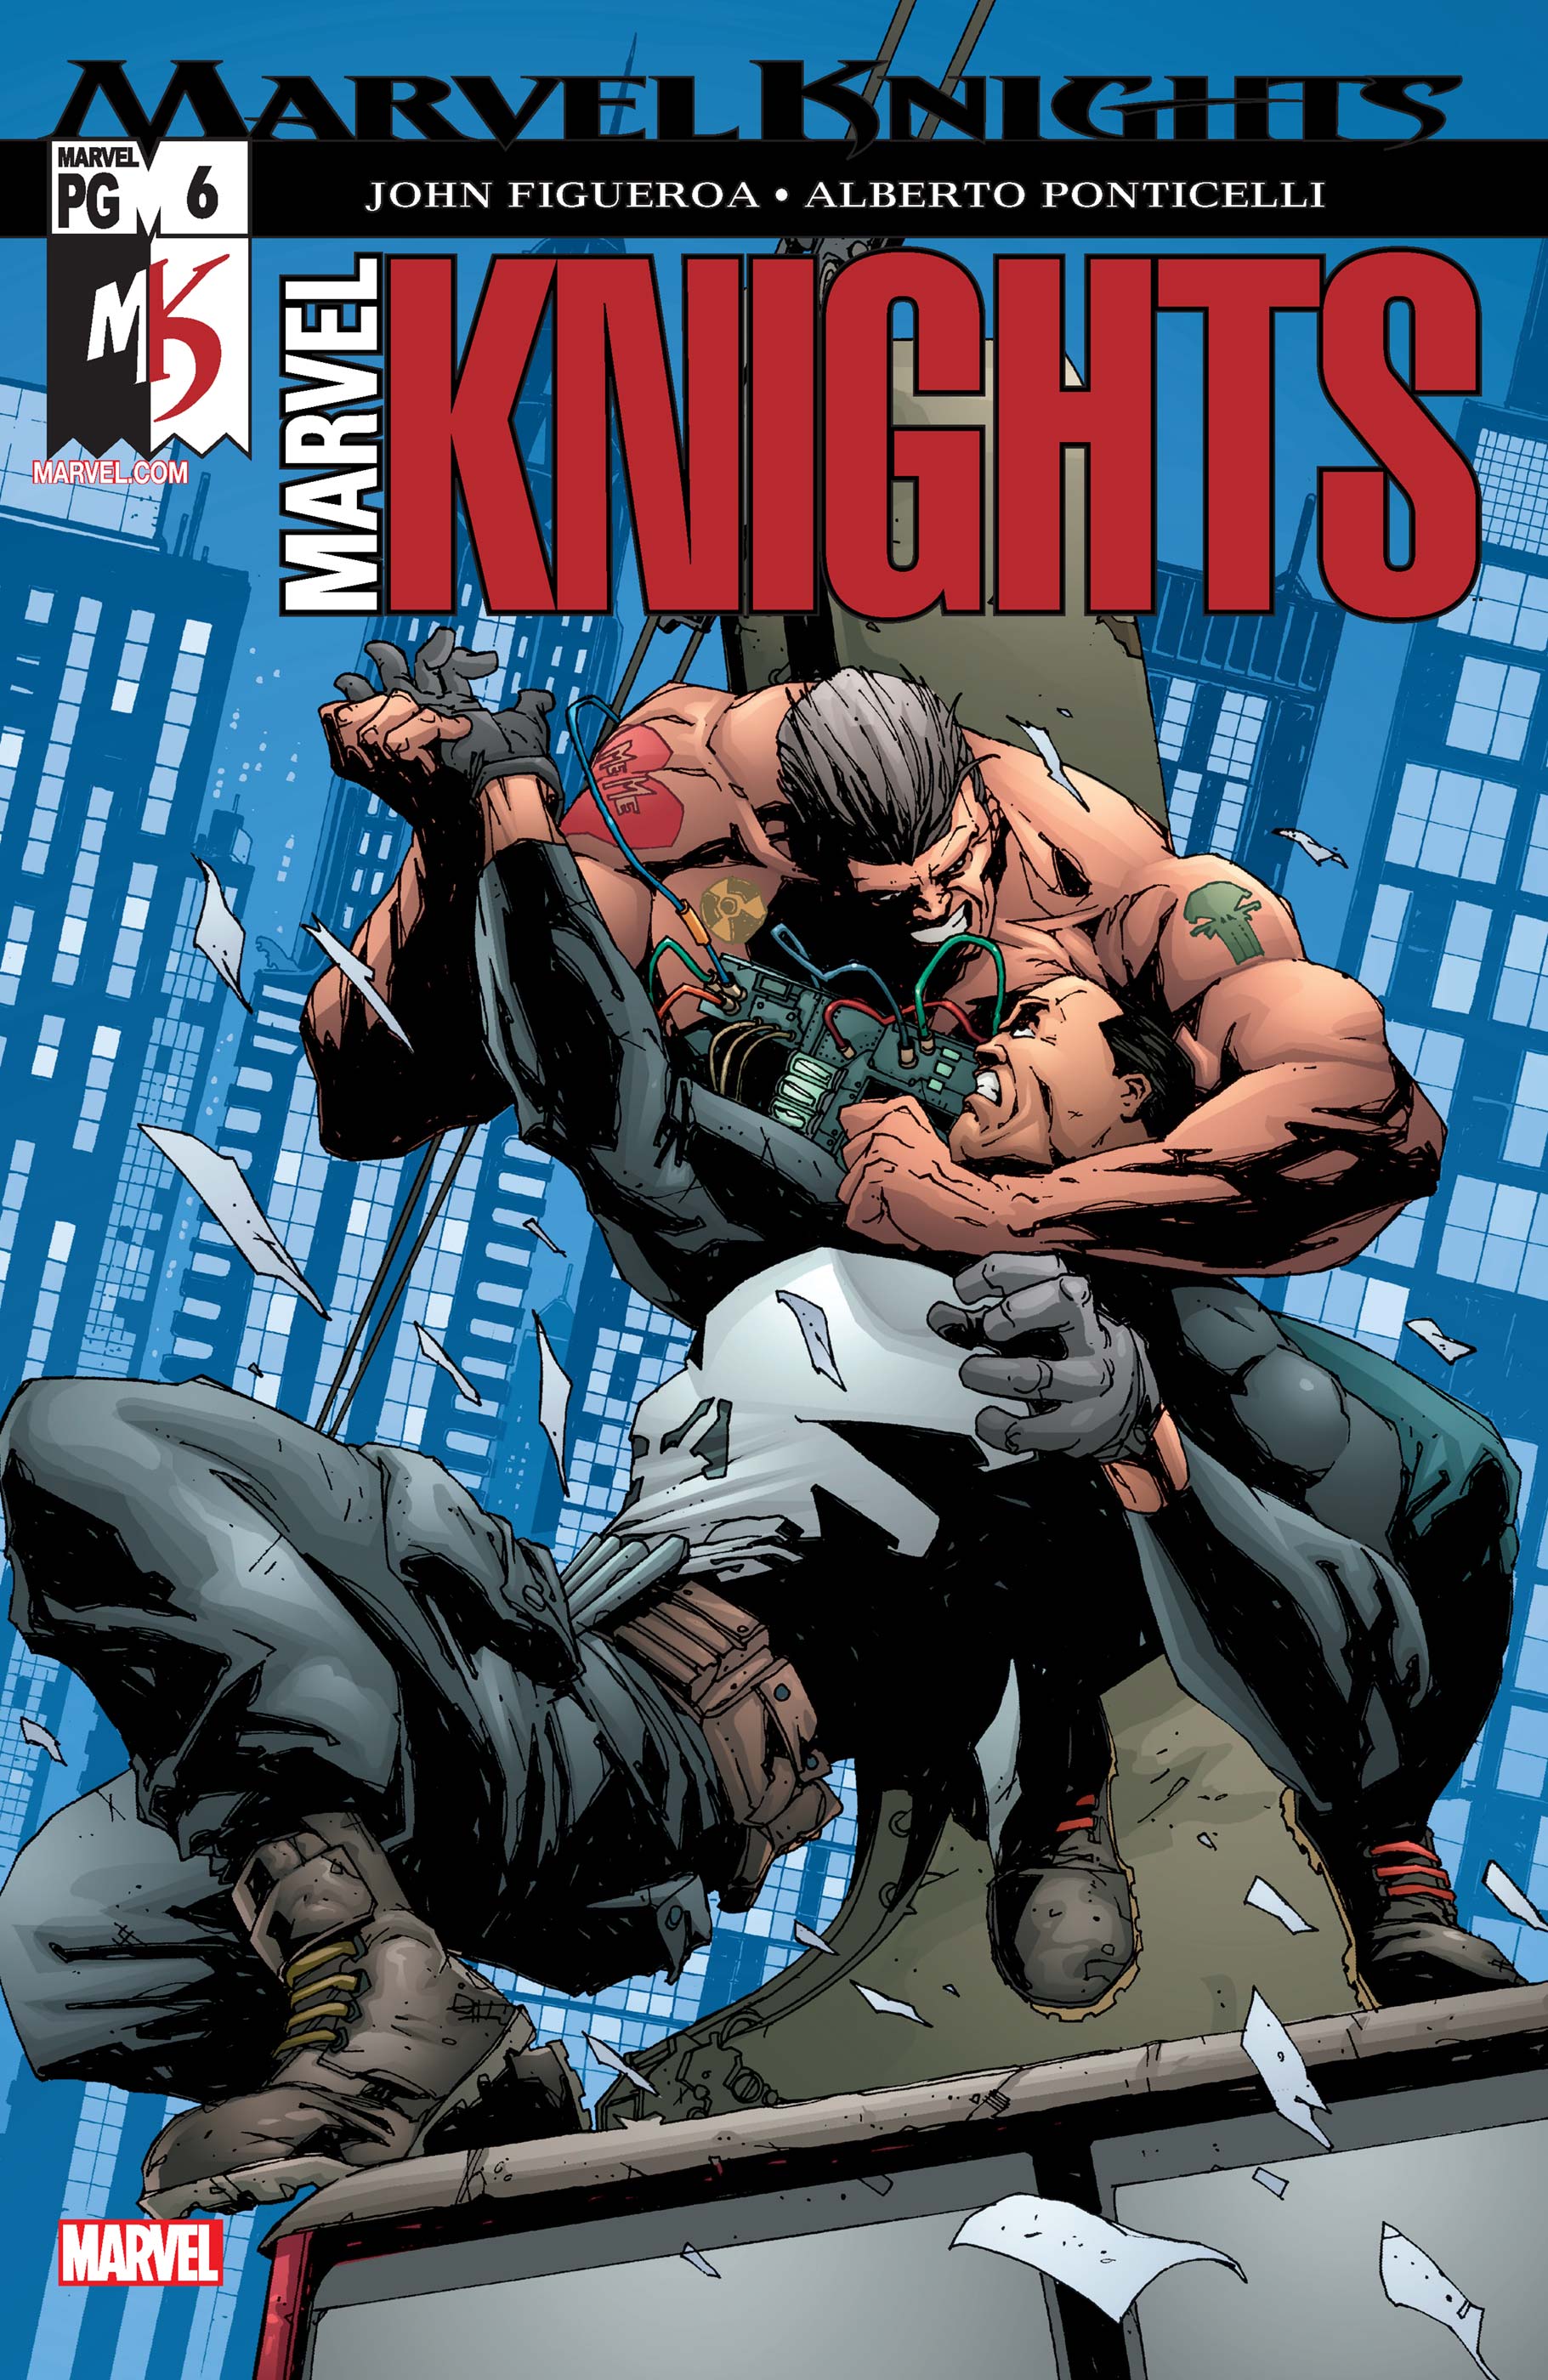 Marvel Knights (2002) #6